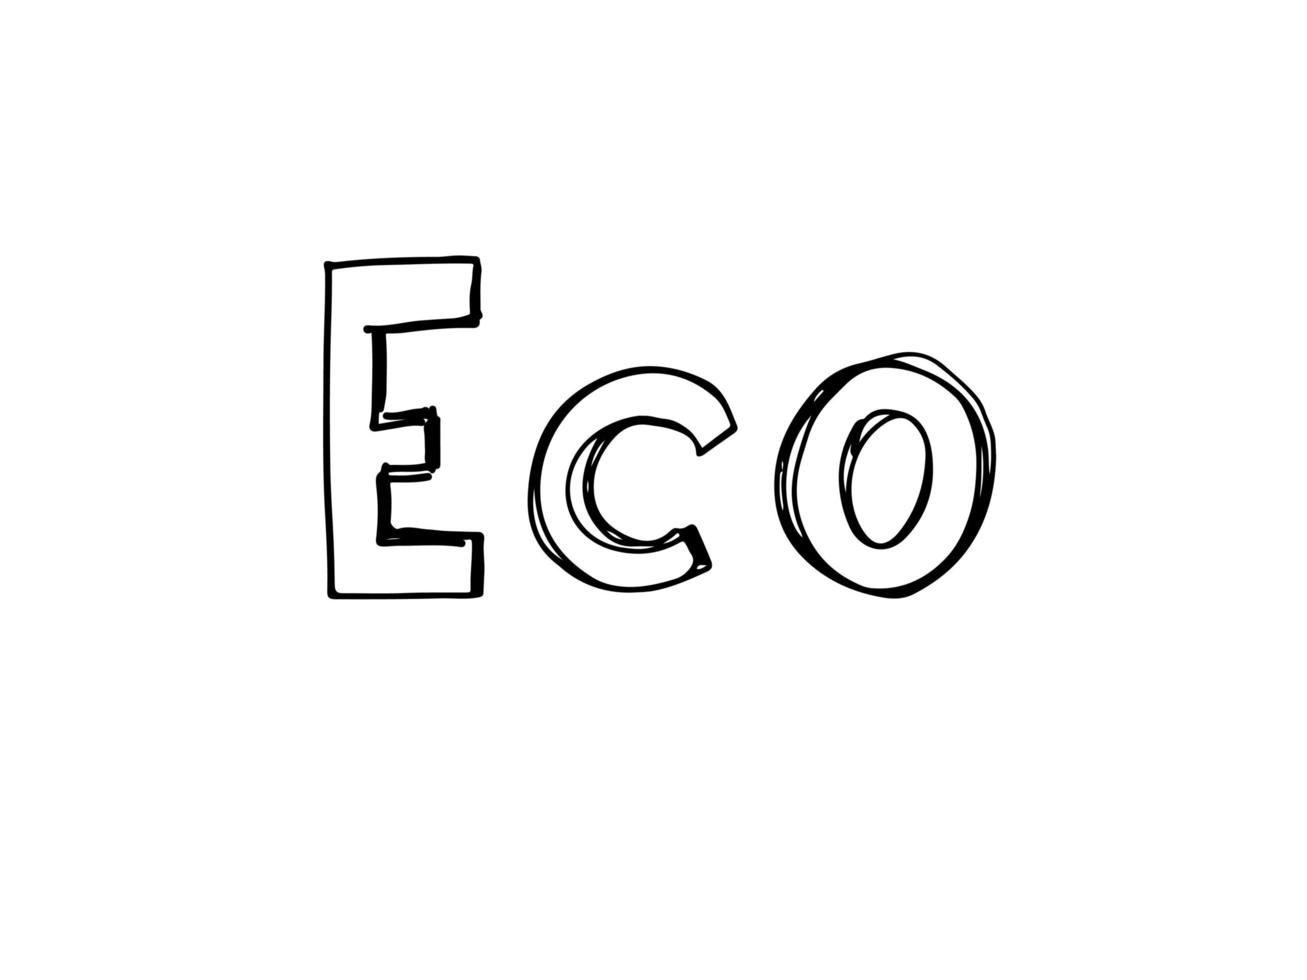 ilustração em vetor da palavra eco com as folhas.